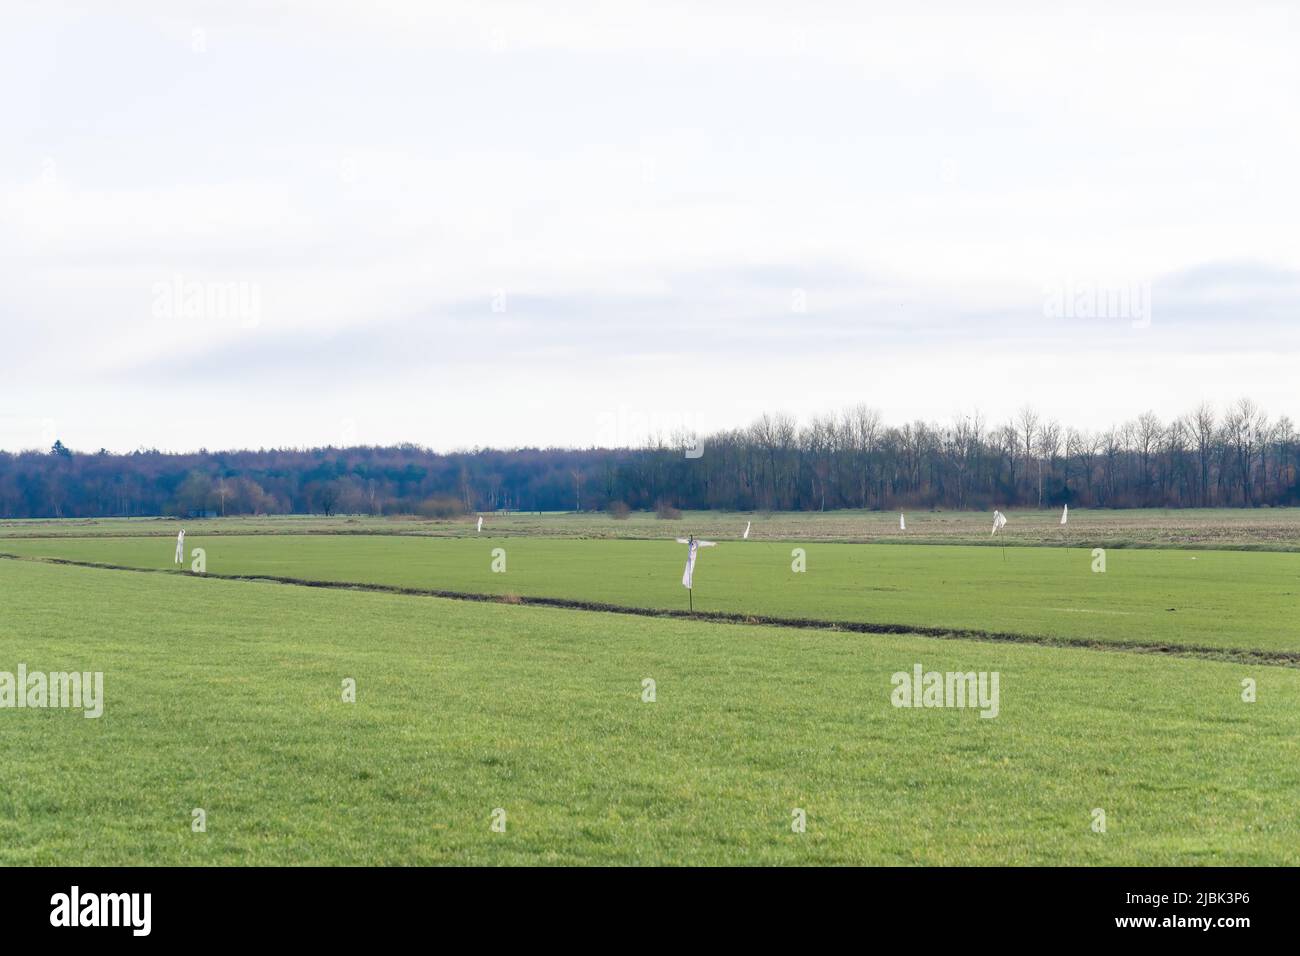 Un groupe de fracas en plastique blanc au milieu d'un champ herbacé, pâturage, avec un fond d'arbres. Agriculteurs et jardiniers Banque D'Images